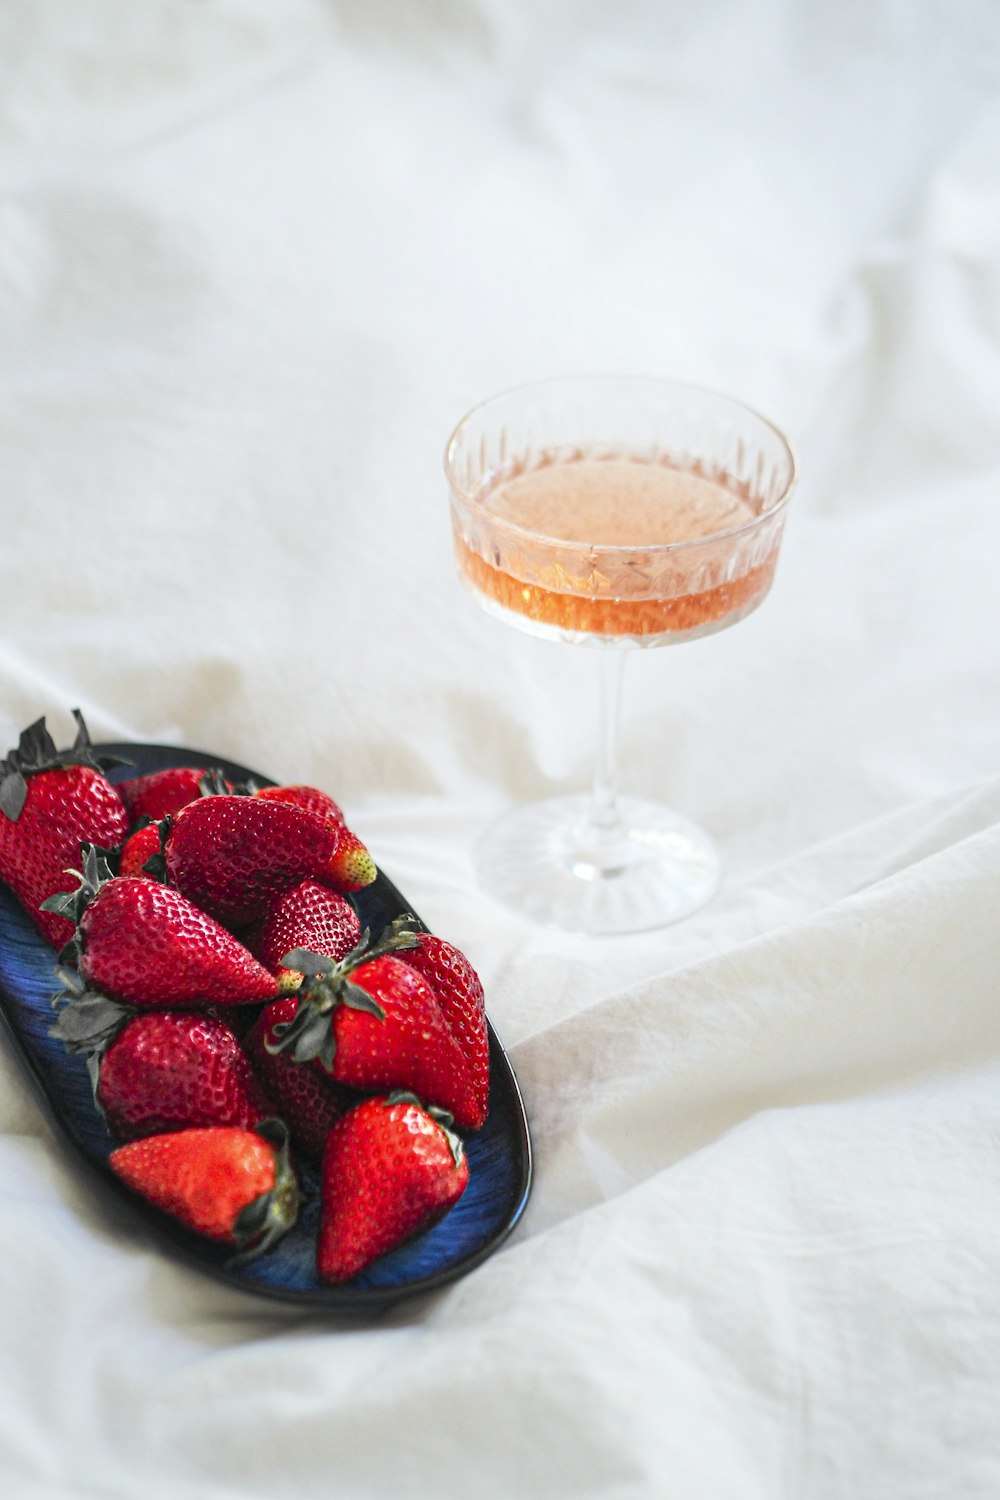 와인 한 잔 옆에 딸기 한 접시